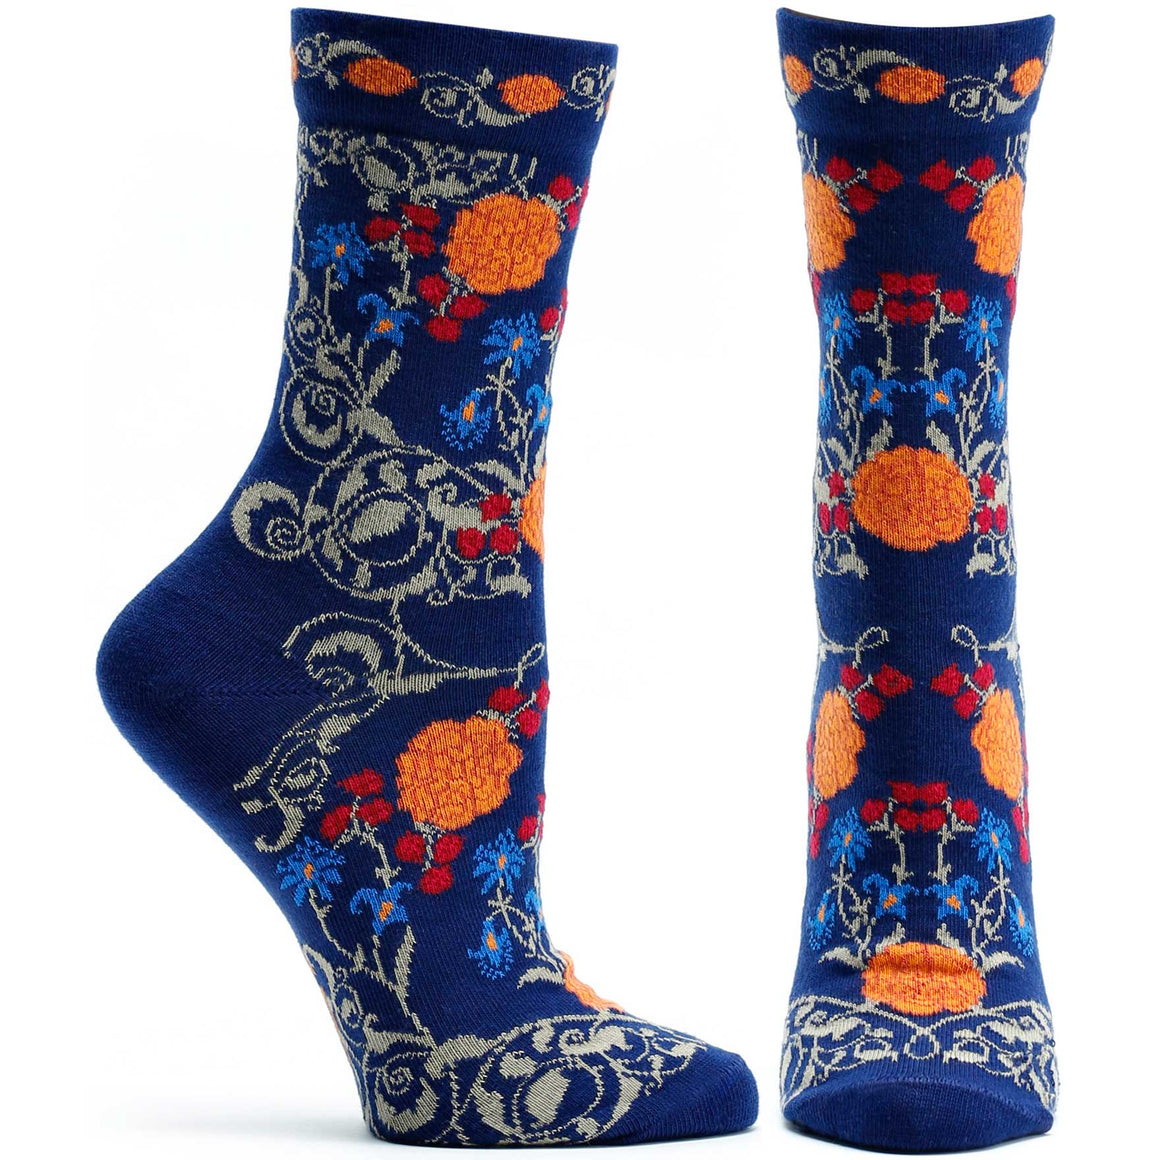 Women's Floral and Flower Socks | Ozone Design | Fun Socks For Women ...